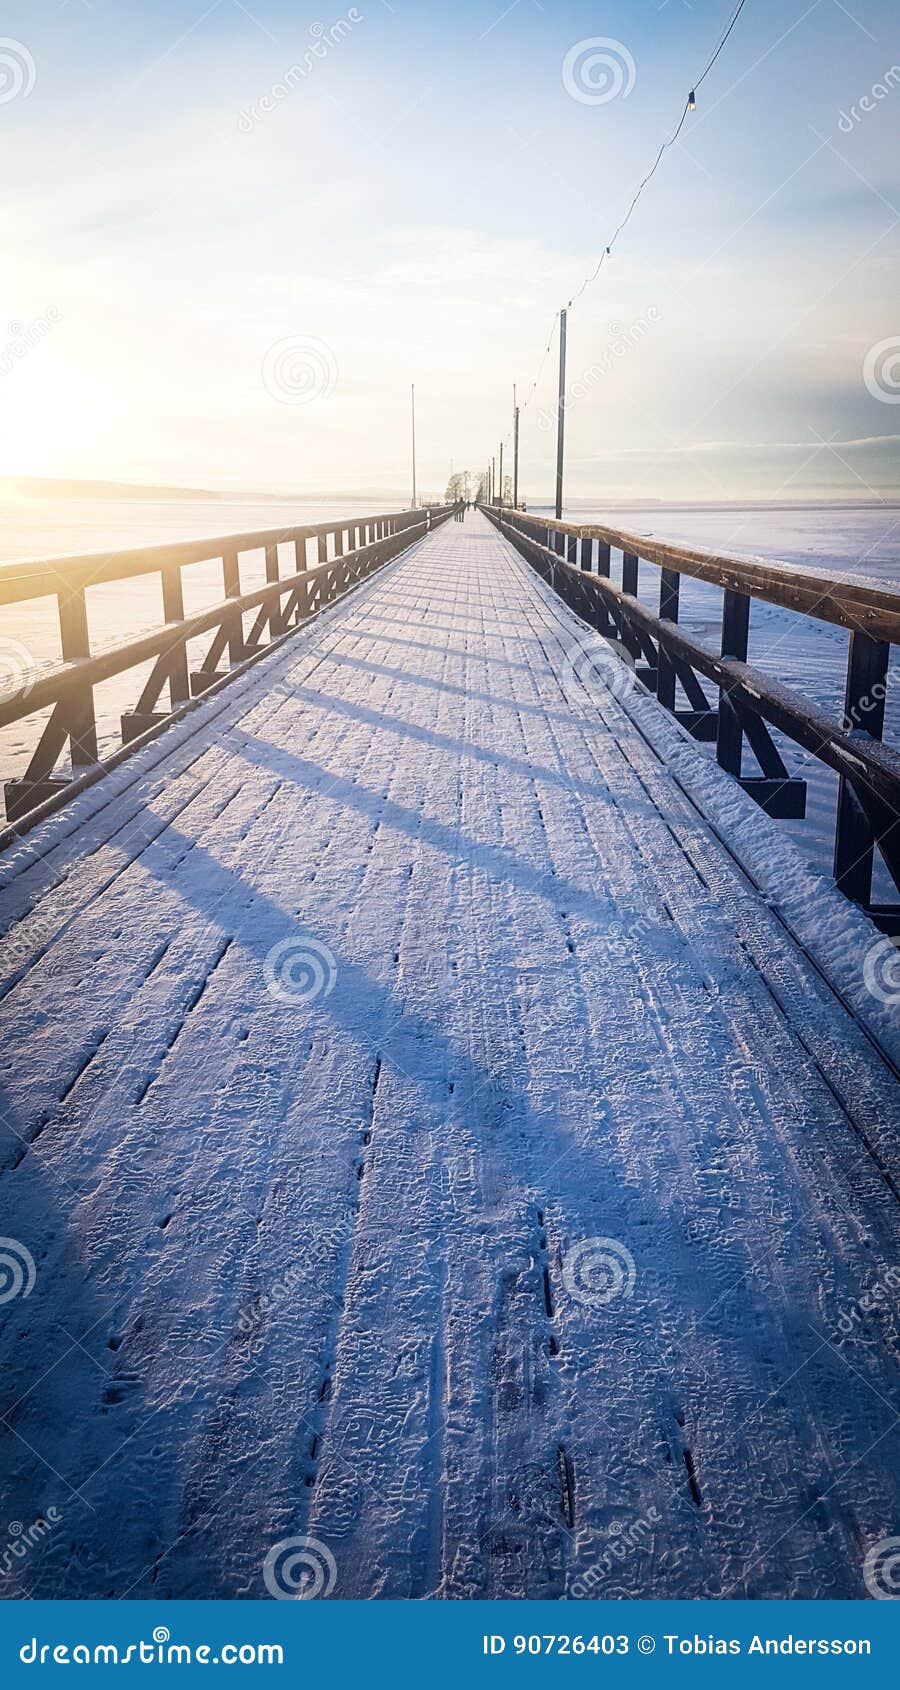 icy bridge